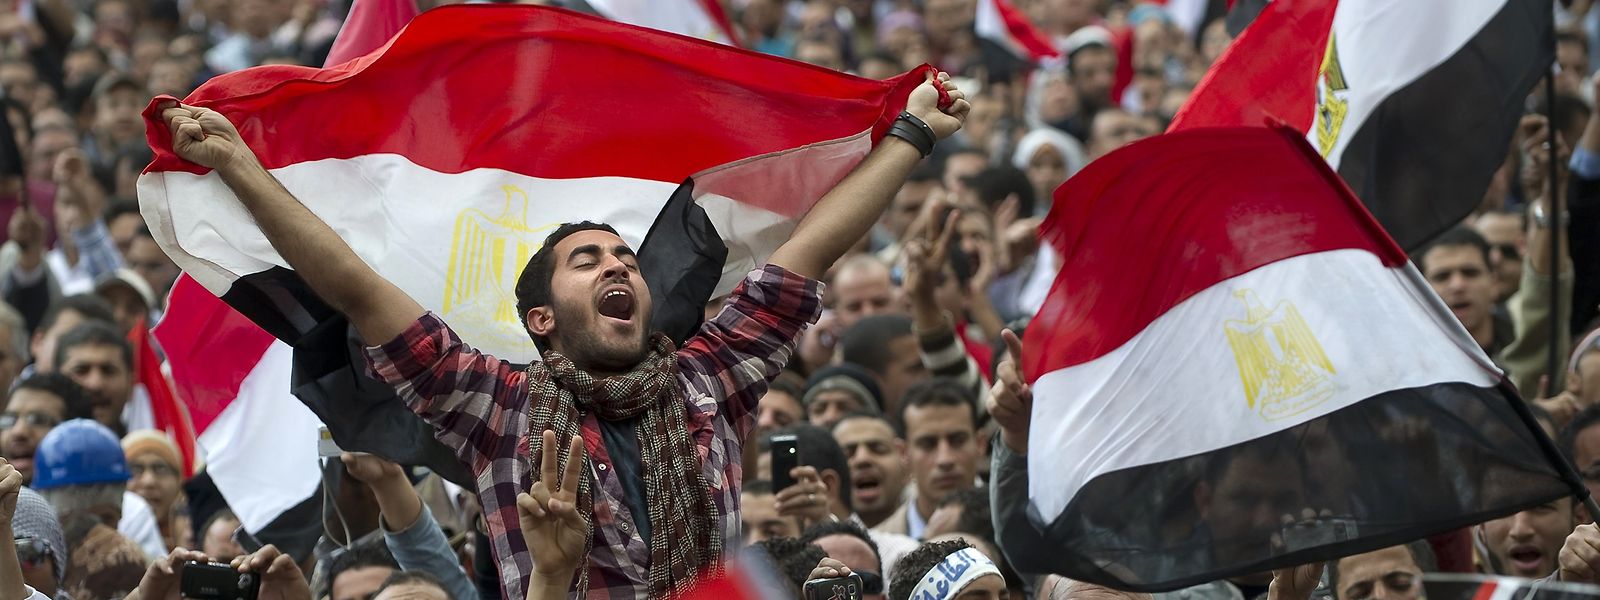 Anfang 2011 demonstrierten Abertausende auf dem zentral gelegenen Tahir-Platz in der ägyptischen Hauptstadt Kairo gegen den damaligen Präsidenten Hosni Mubarak, der schließlich zurücktrat. Doch ihre Hoffnungen auf eine Demokratisierung des Landes wurden enttäuscht. 